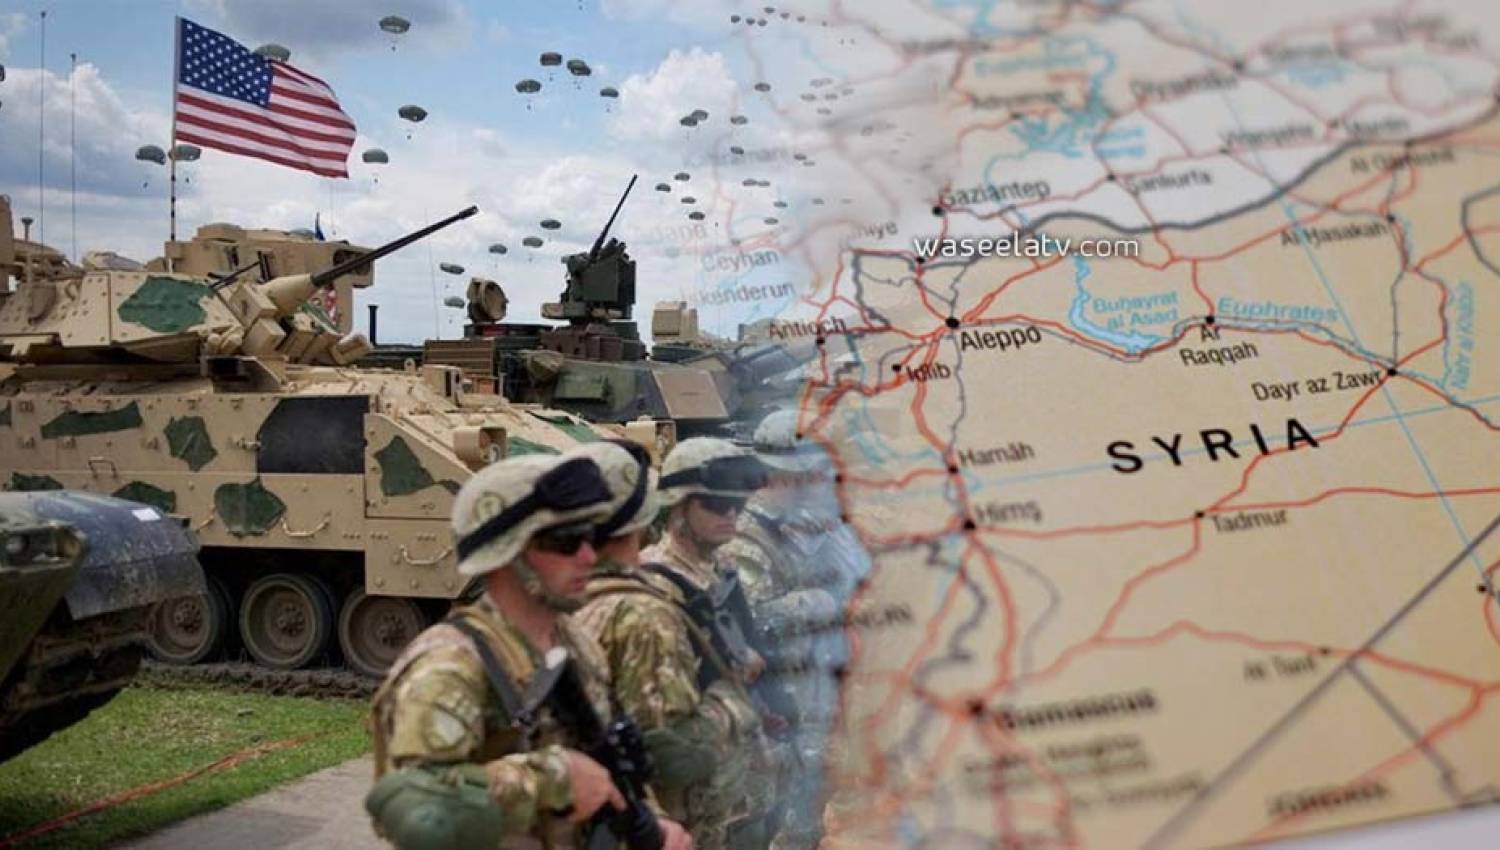 הצעת חוק בקונגרס להסיג את הכוחות האמריקניים מסוריה